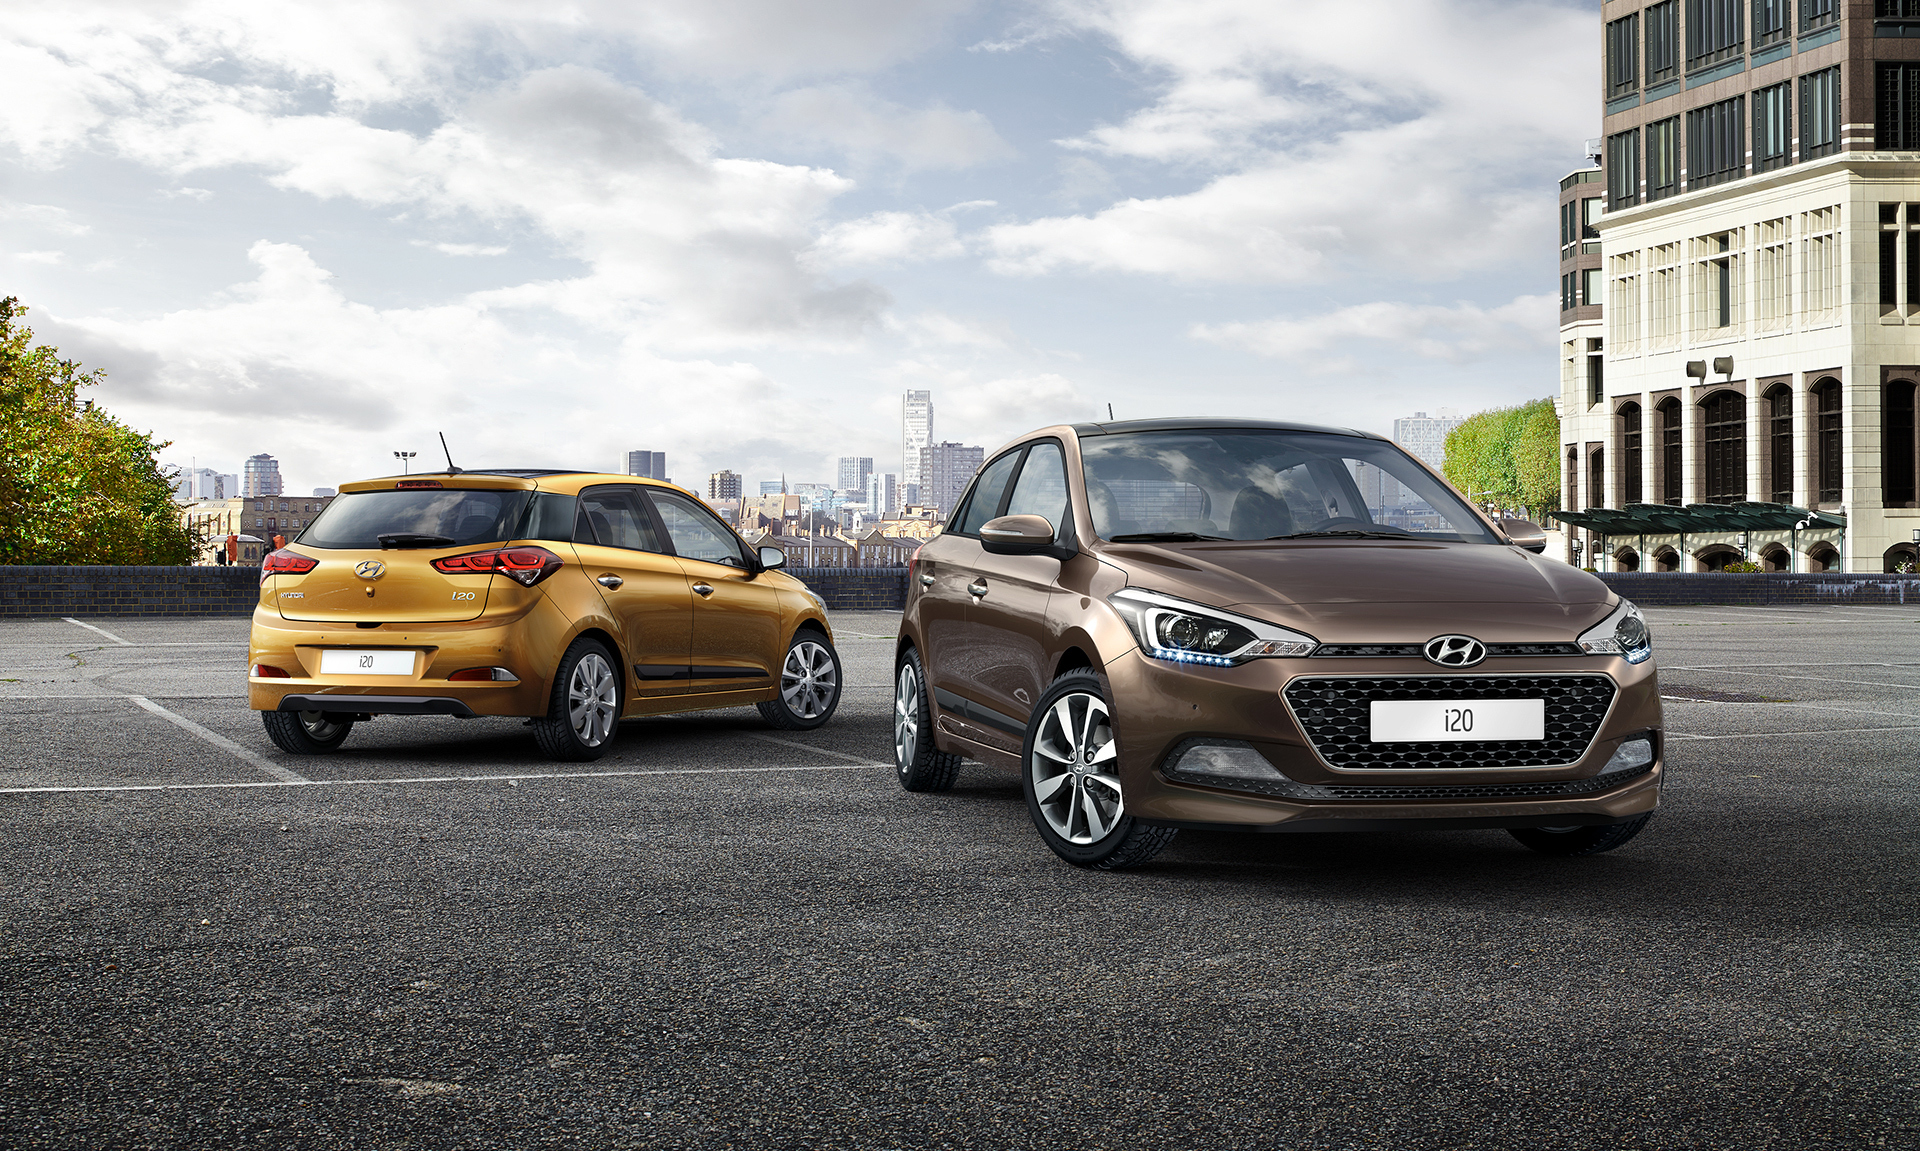 Nova generacija modela Hyundai i20 stigla u Srbiju